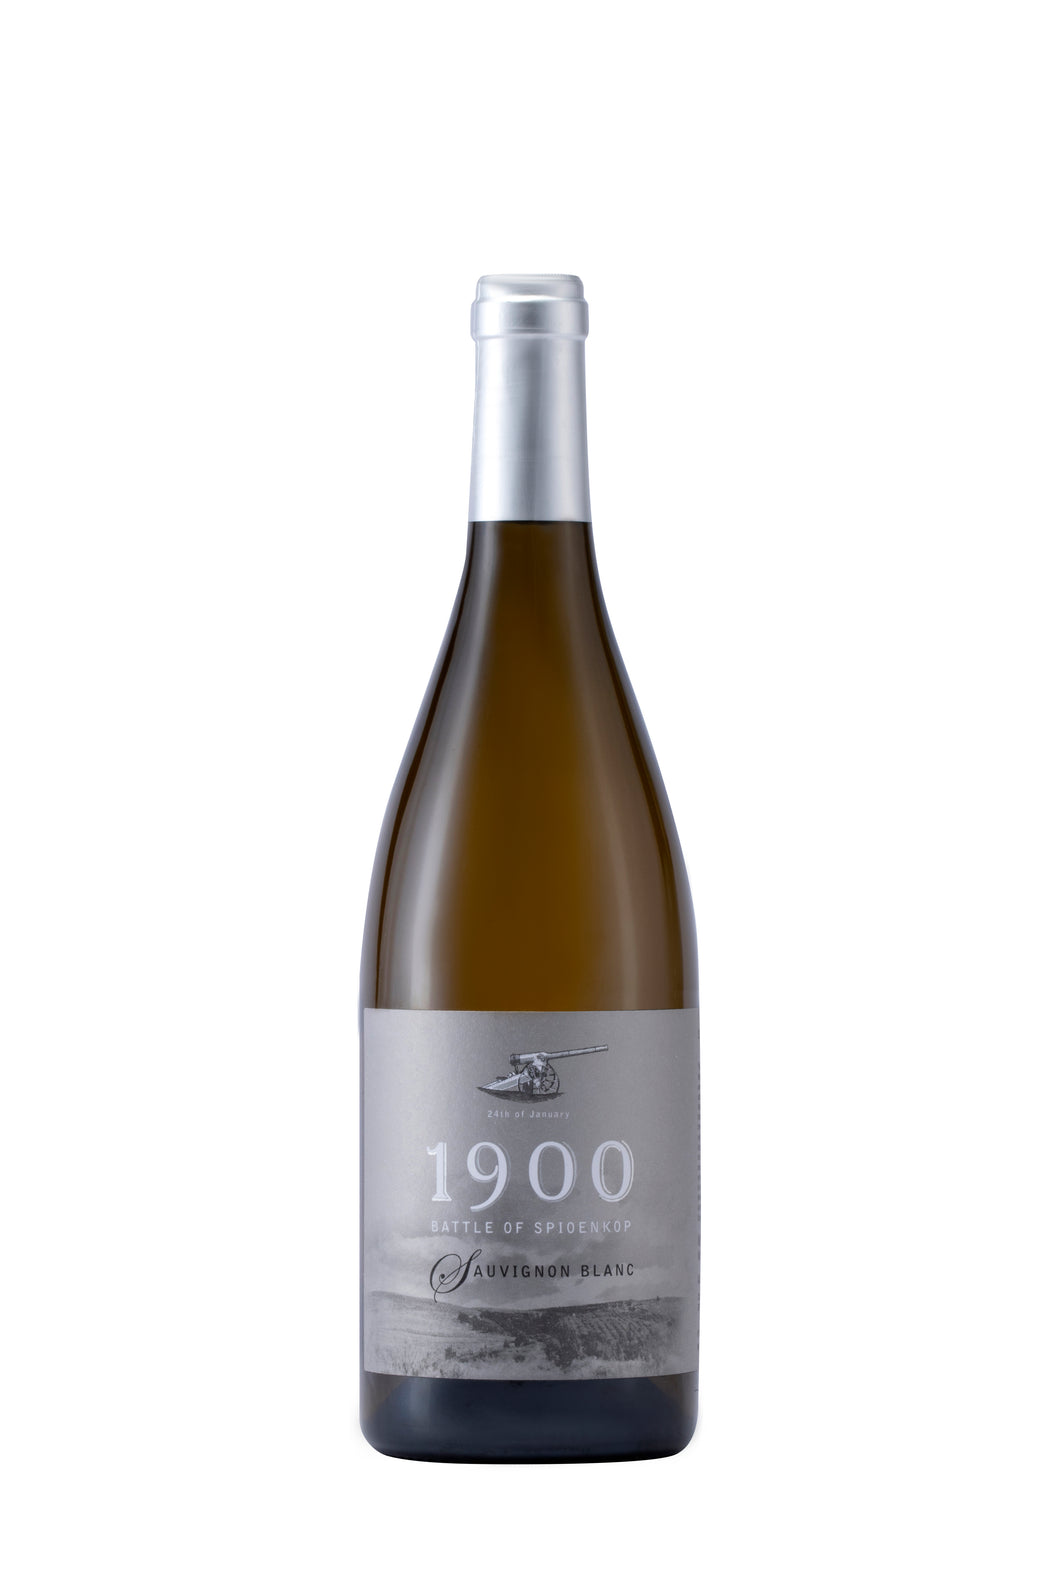 Spioenkop 1900 Sauvignon Blanc 2021 (per case of 6)